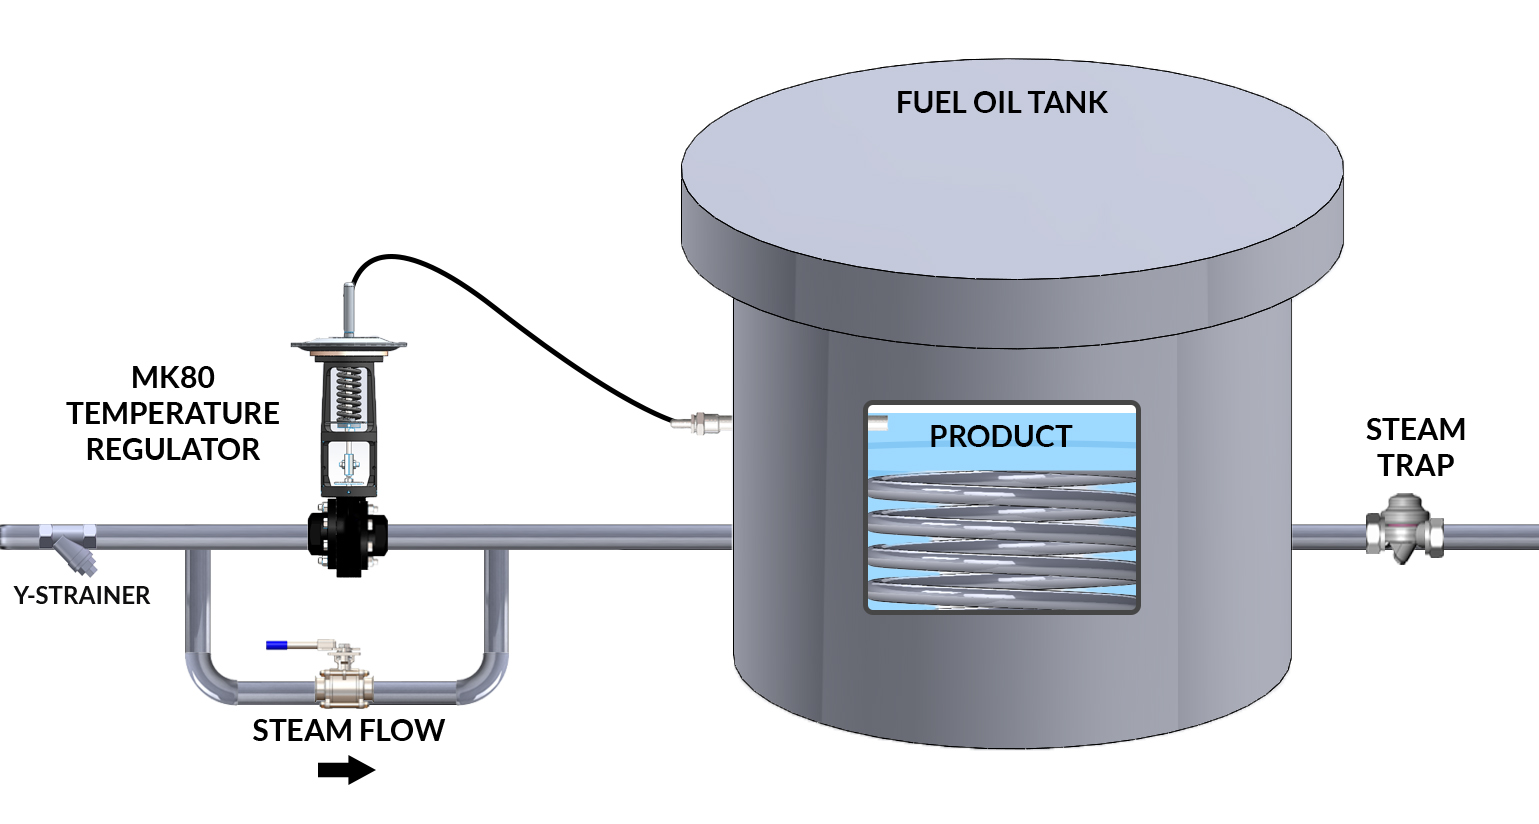 Tank Temperature Regulation with Mark 80 Temperature Regulator